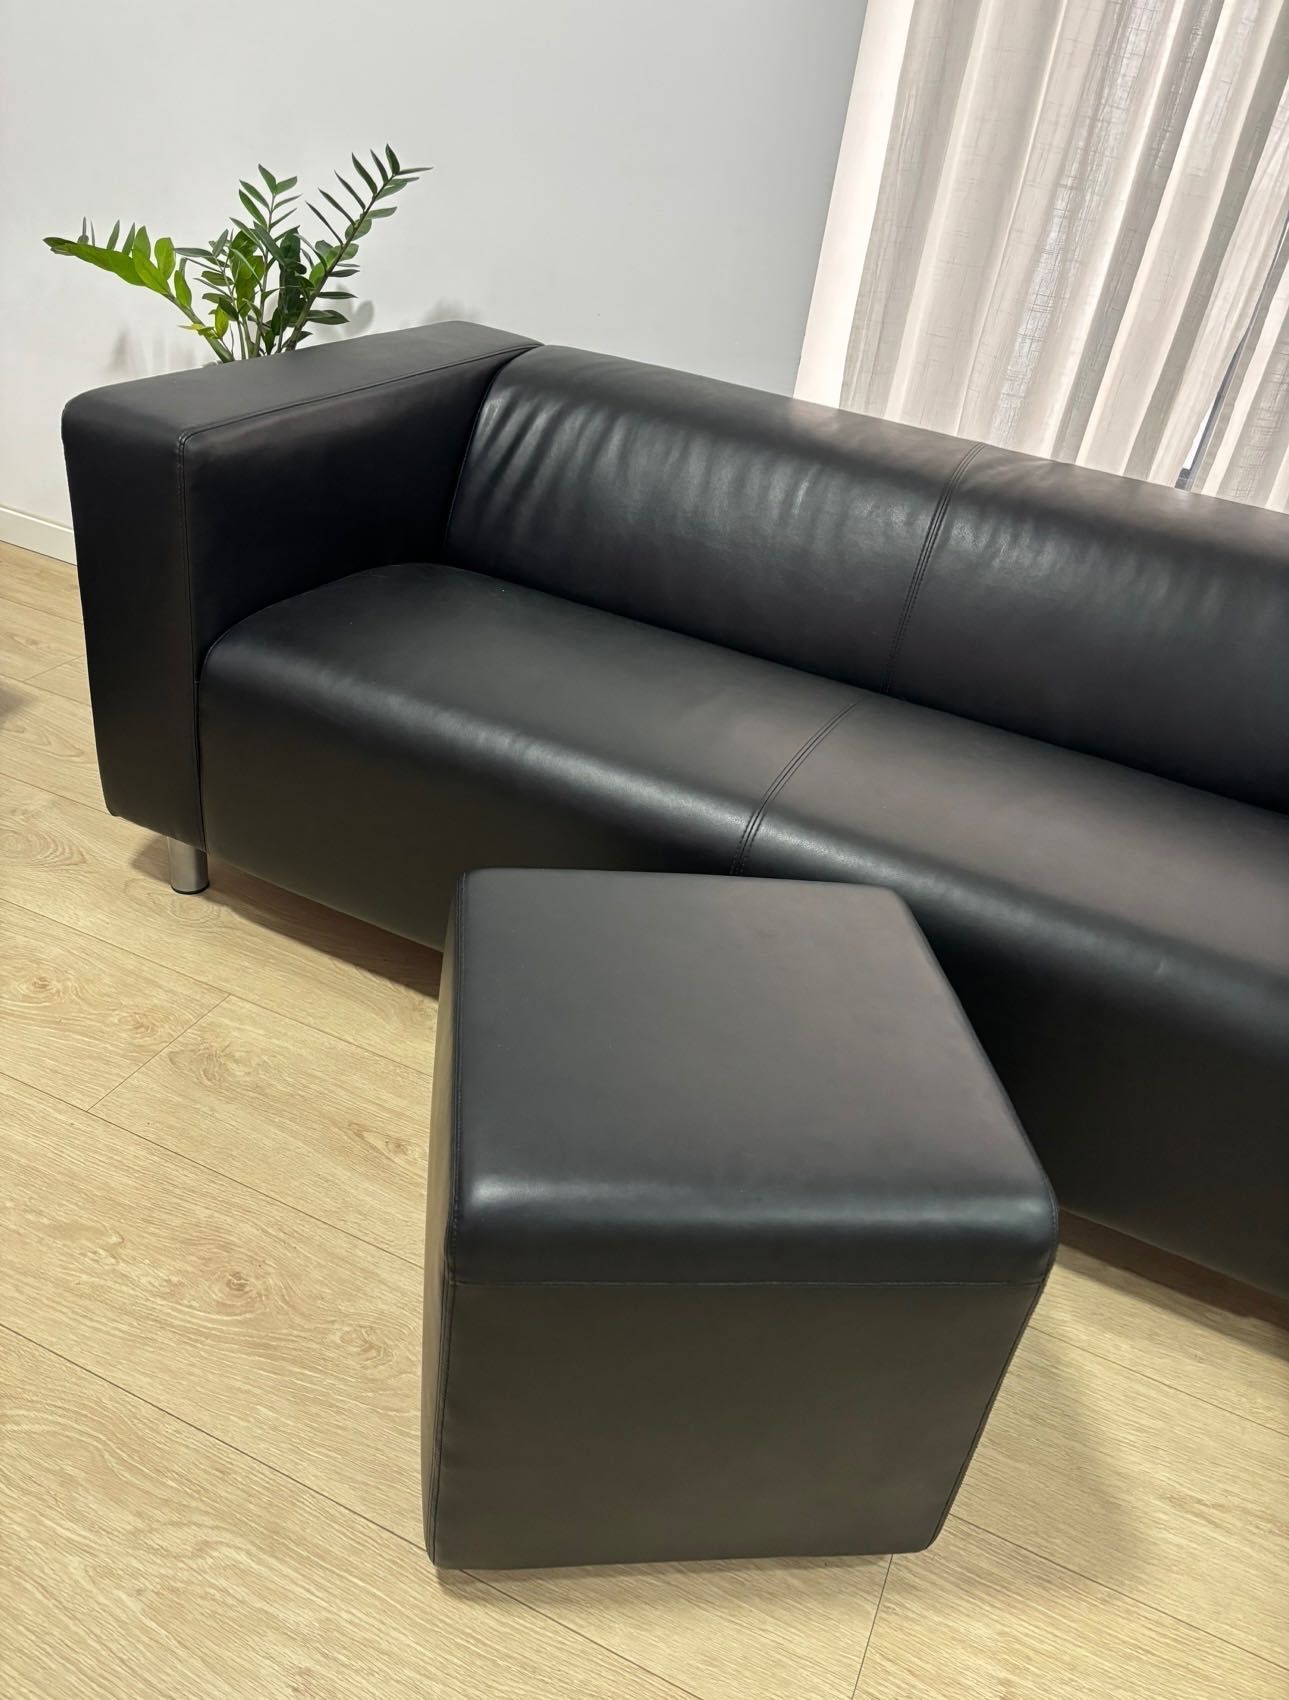 Sofa Klippan Preto - excelente estado - pele sintetica